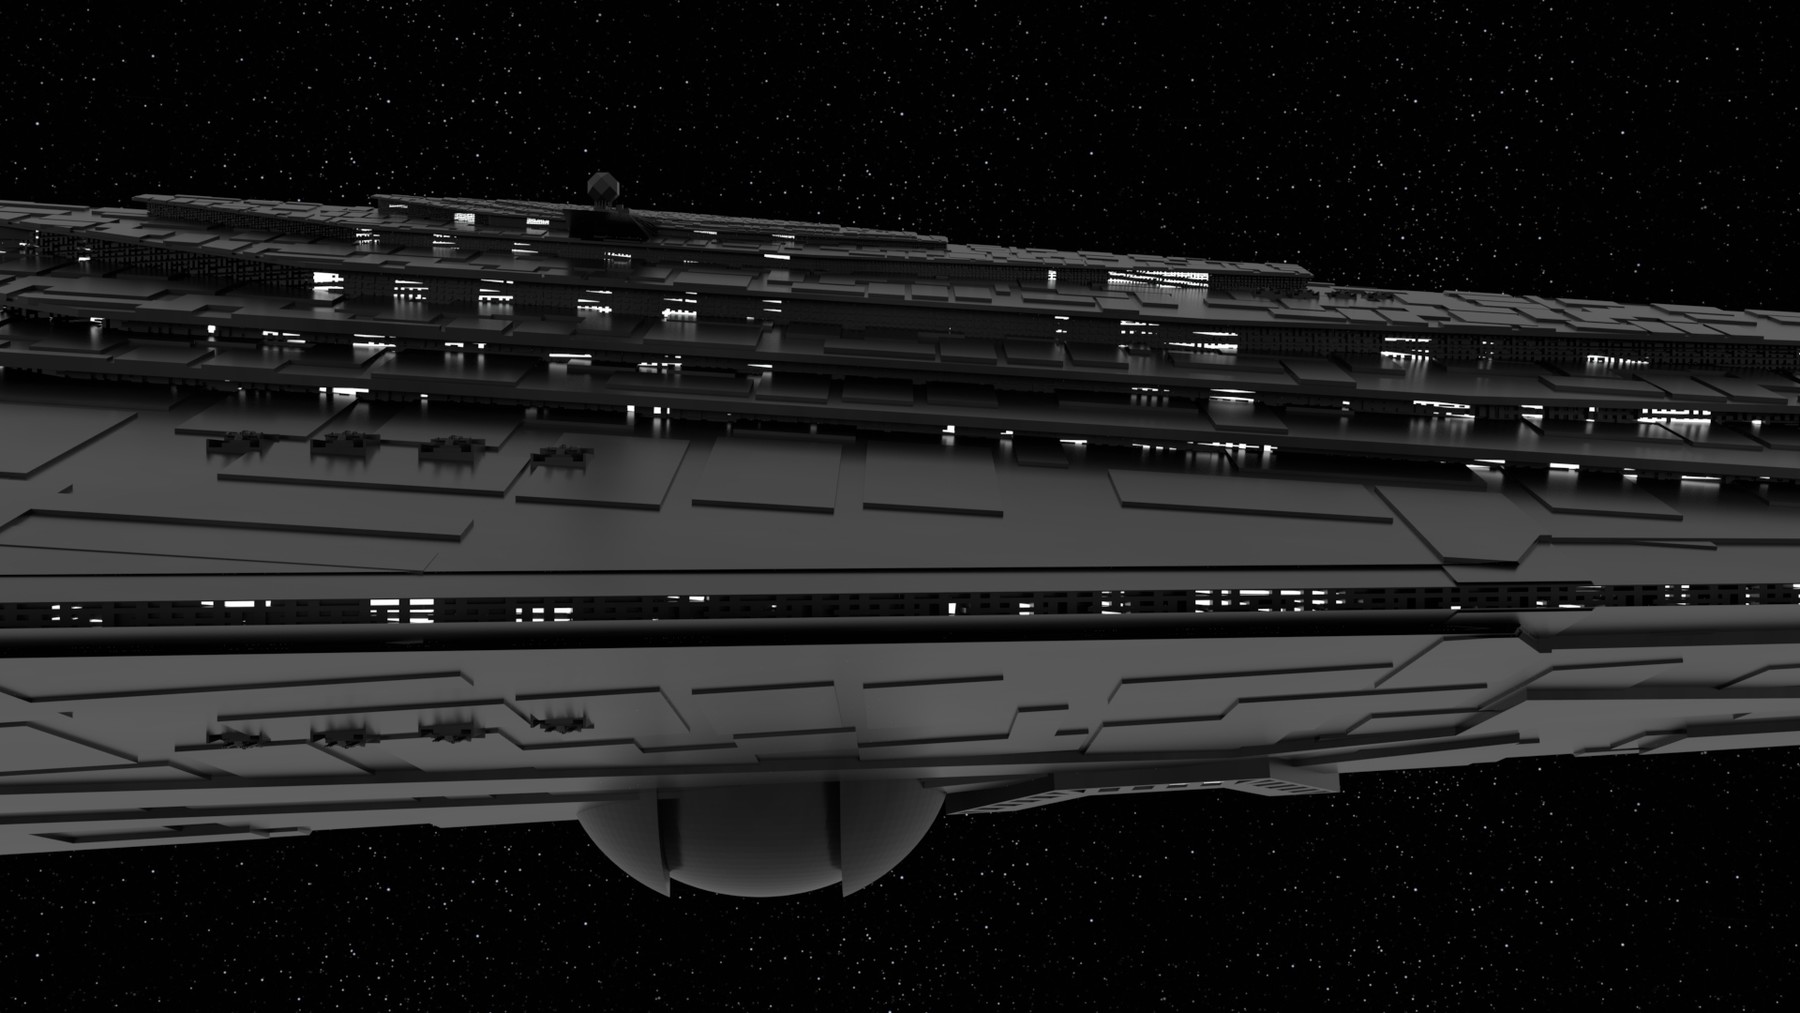 star wars resurgent class star destroyer